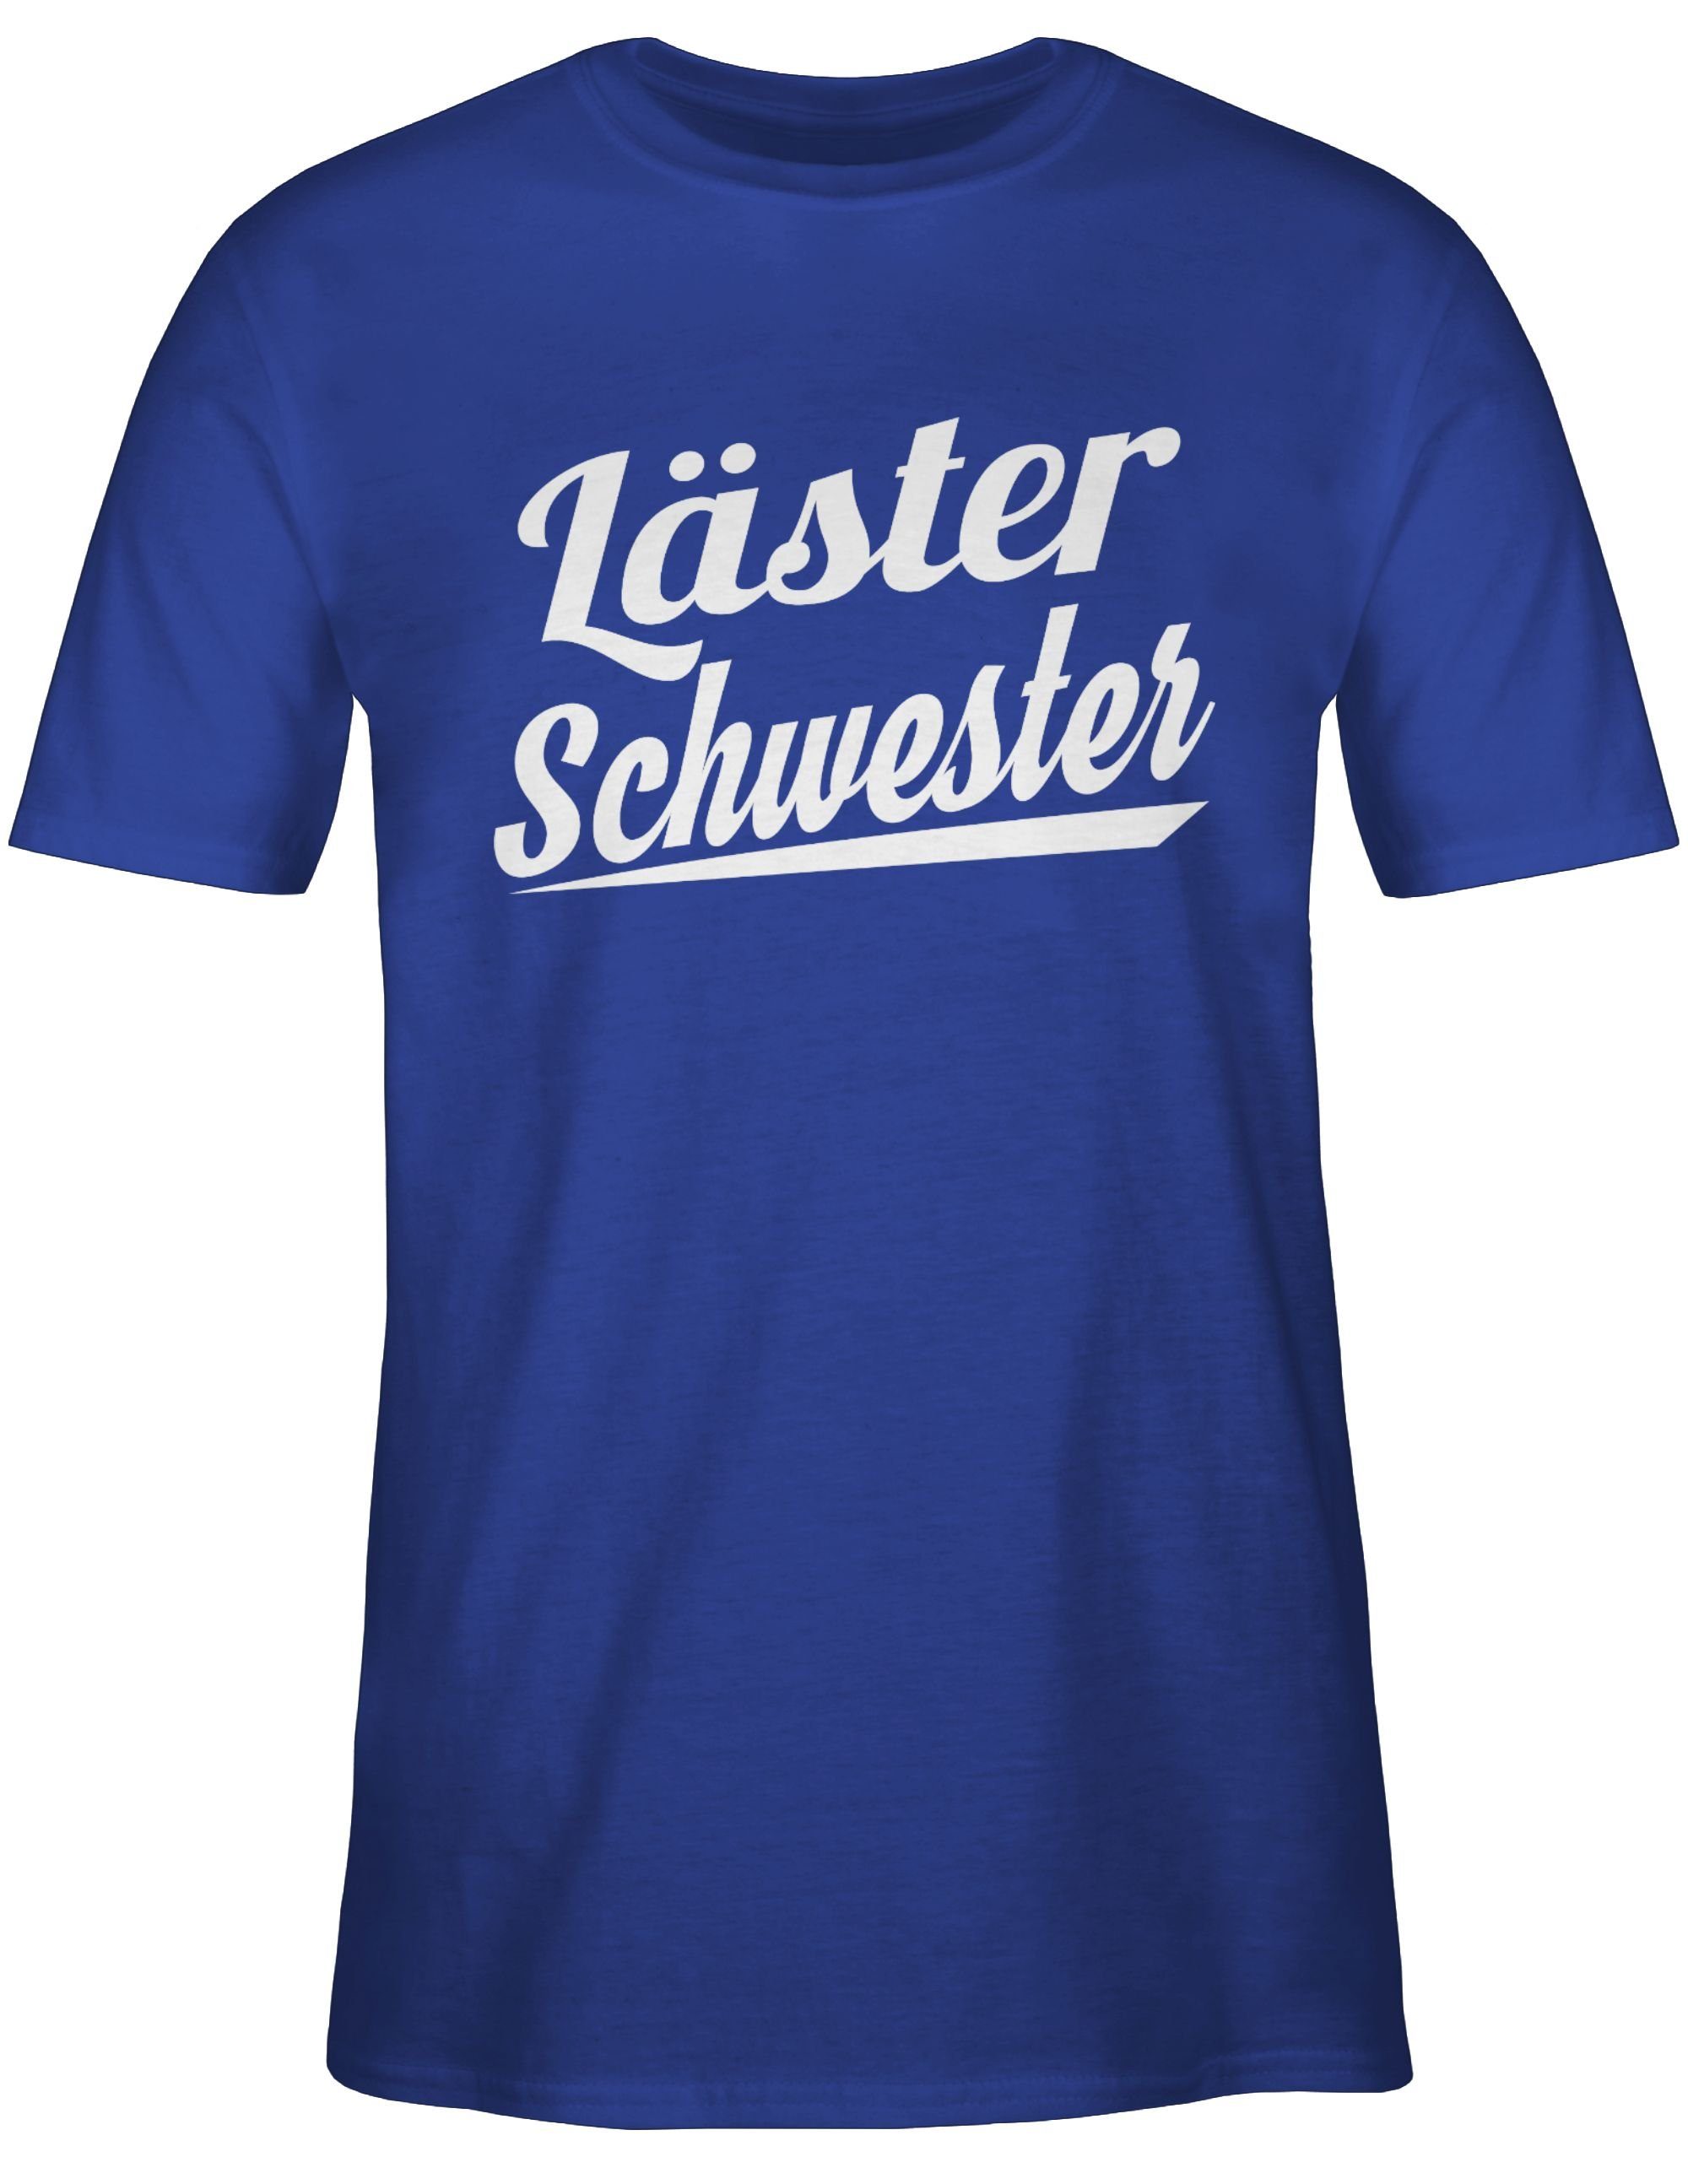 Schwester Shirtracer - Sprüche Statement Royalblau 03 T-Shirt Läster weiß